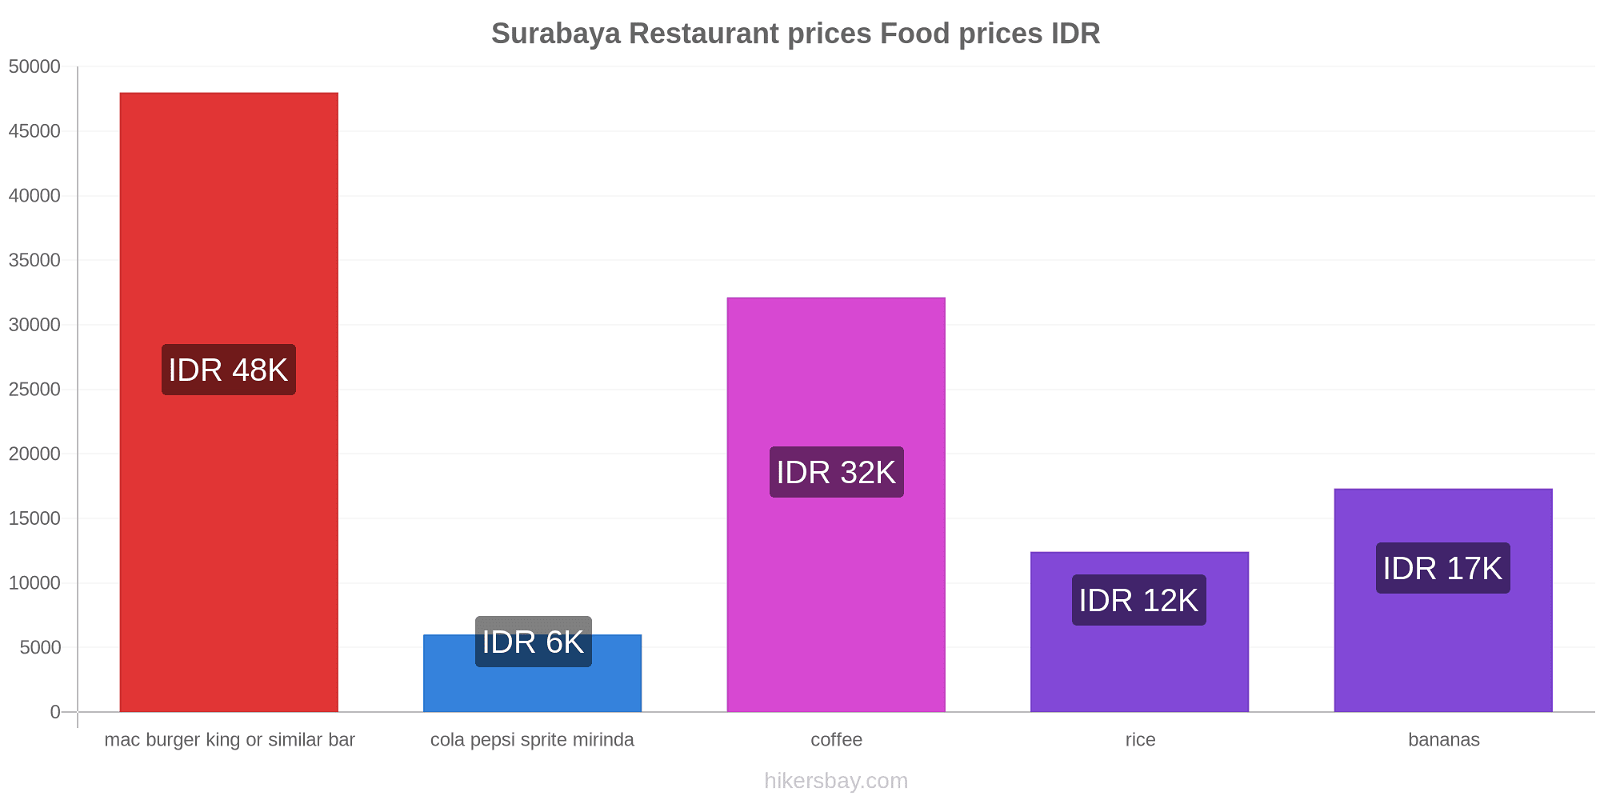 Surabaya price changes hikersbay.com